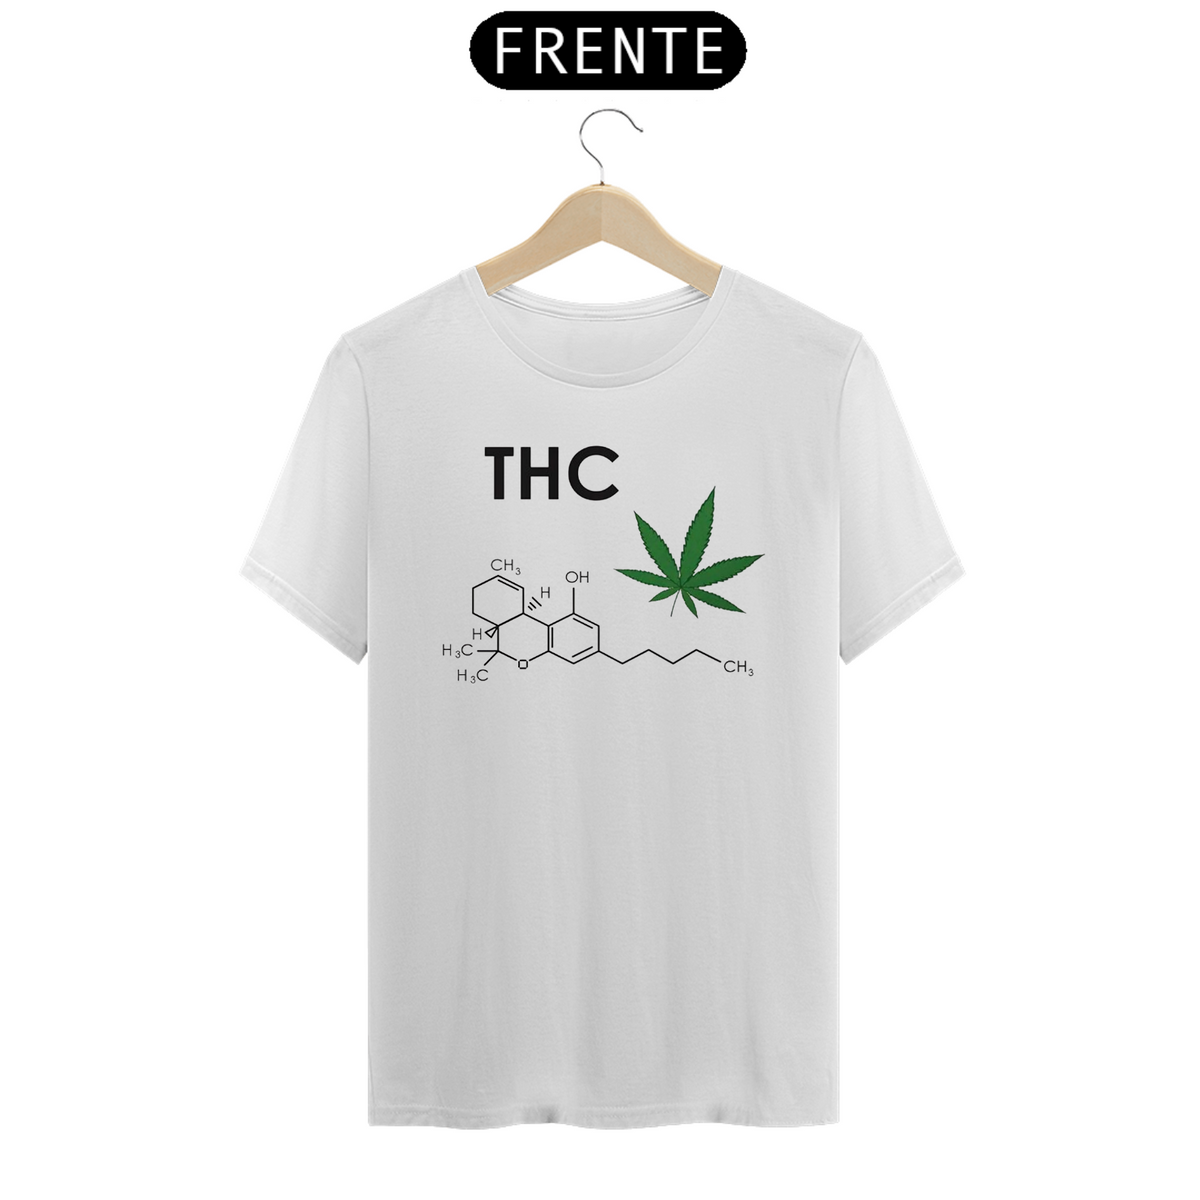 Nome do produto: Cannabis